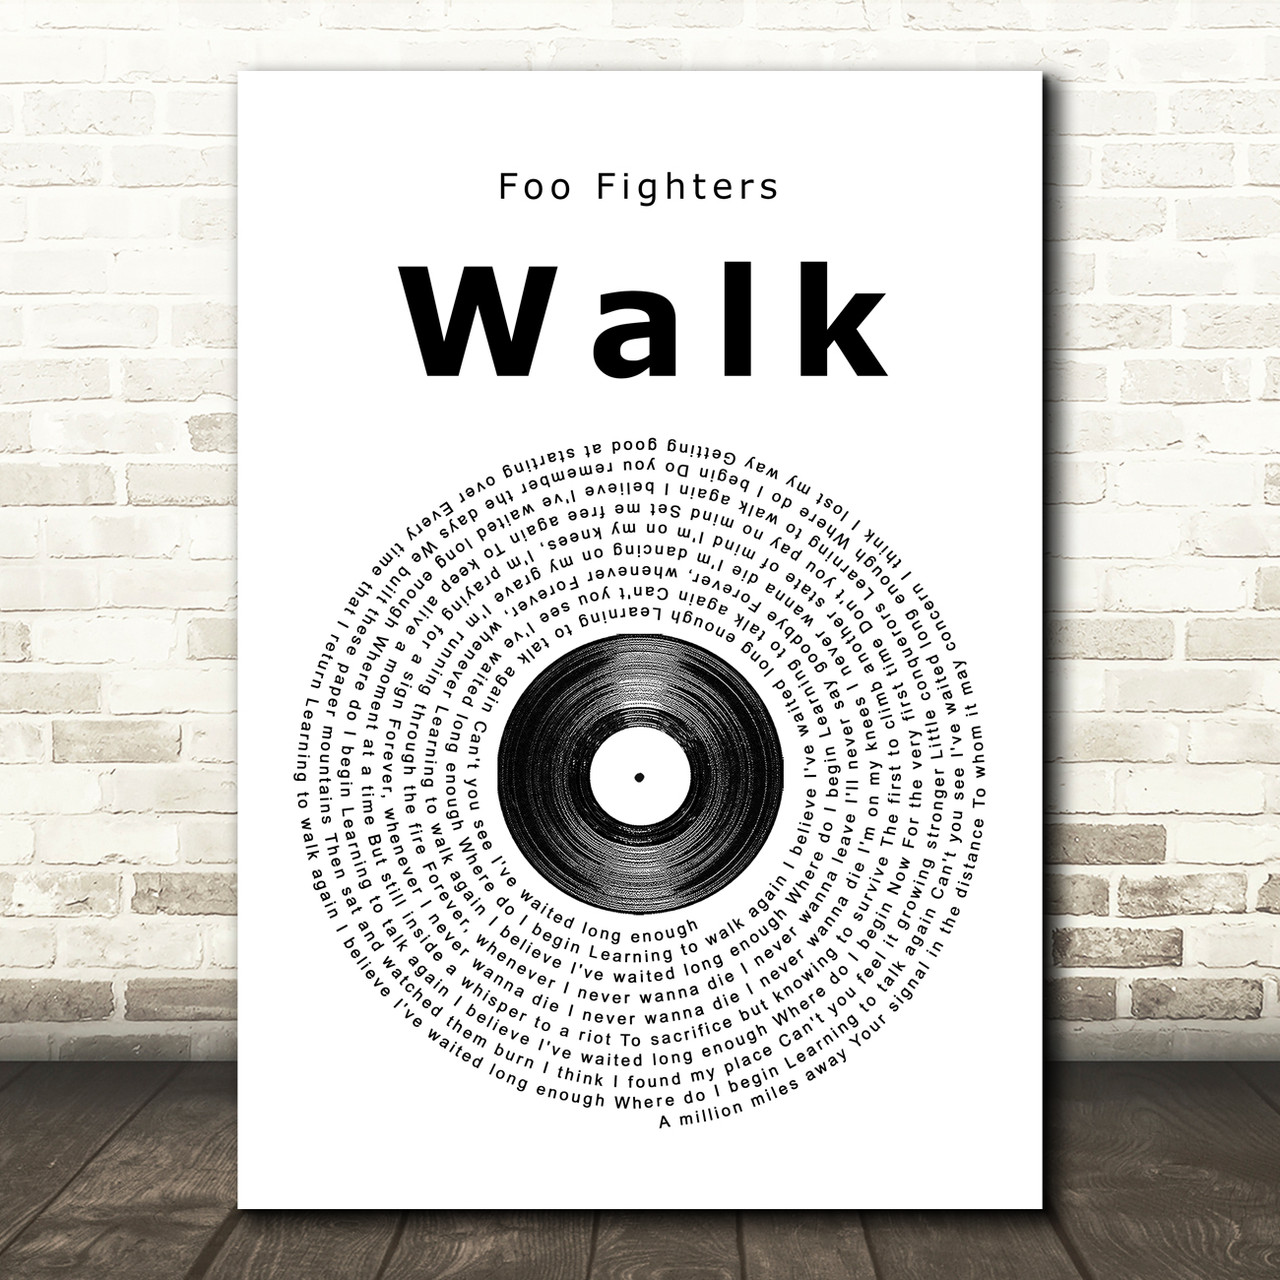 Walk' - Foo Fighters